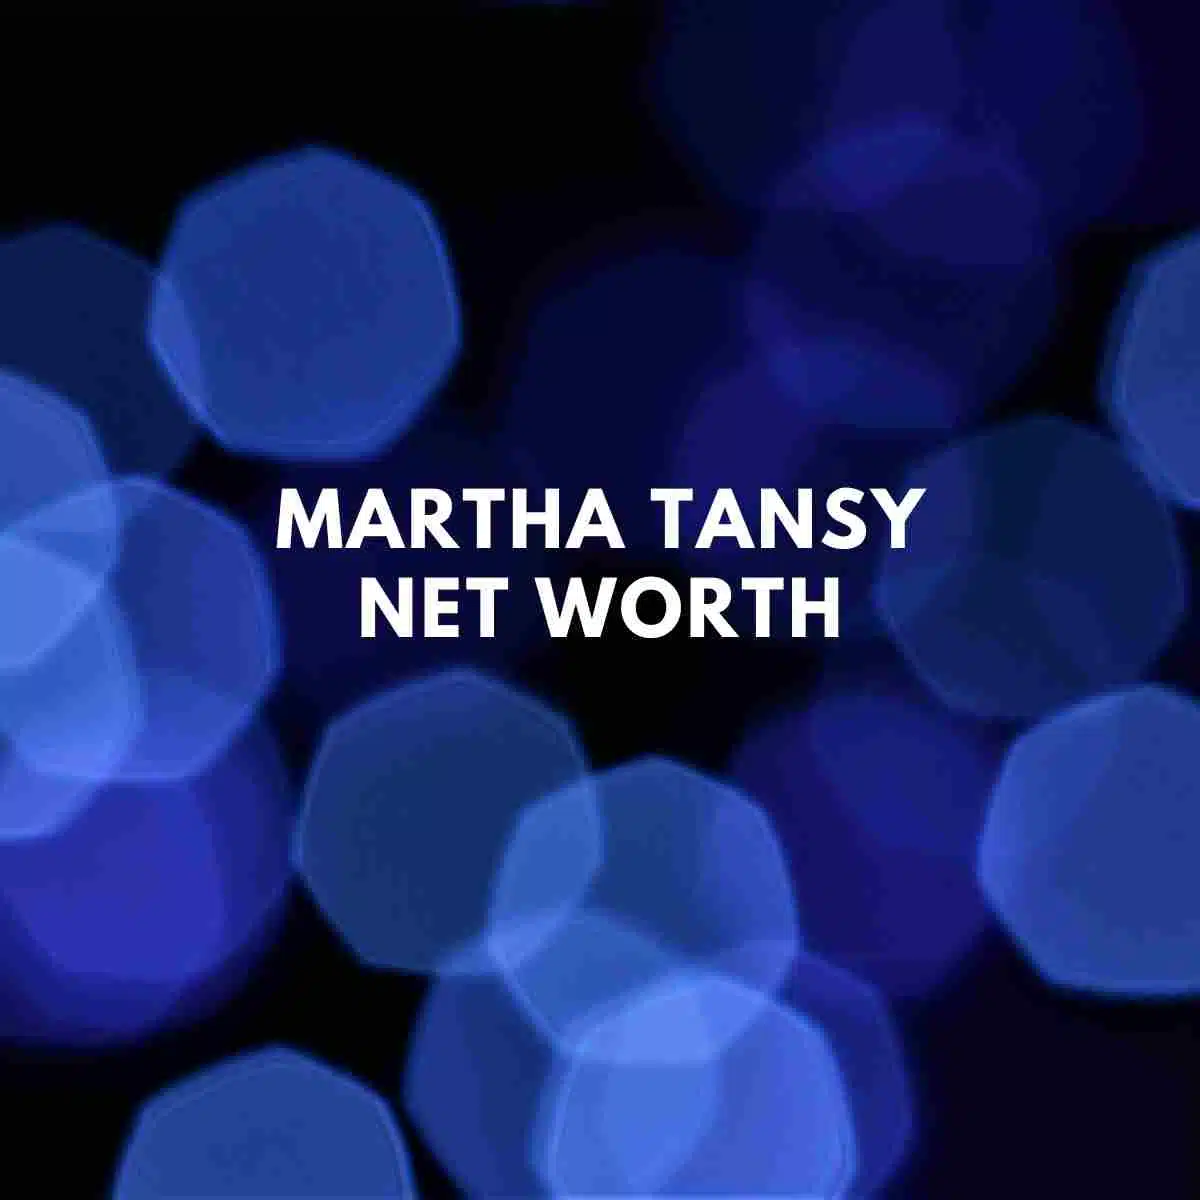 Martha Tansy net worth